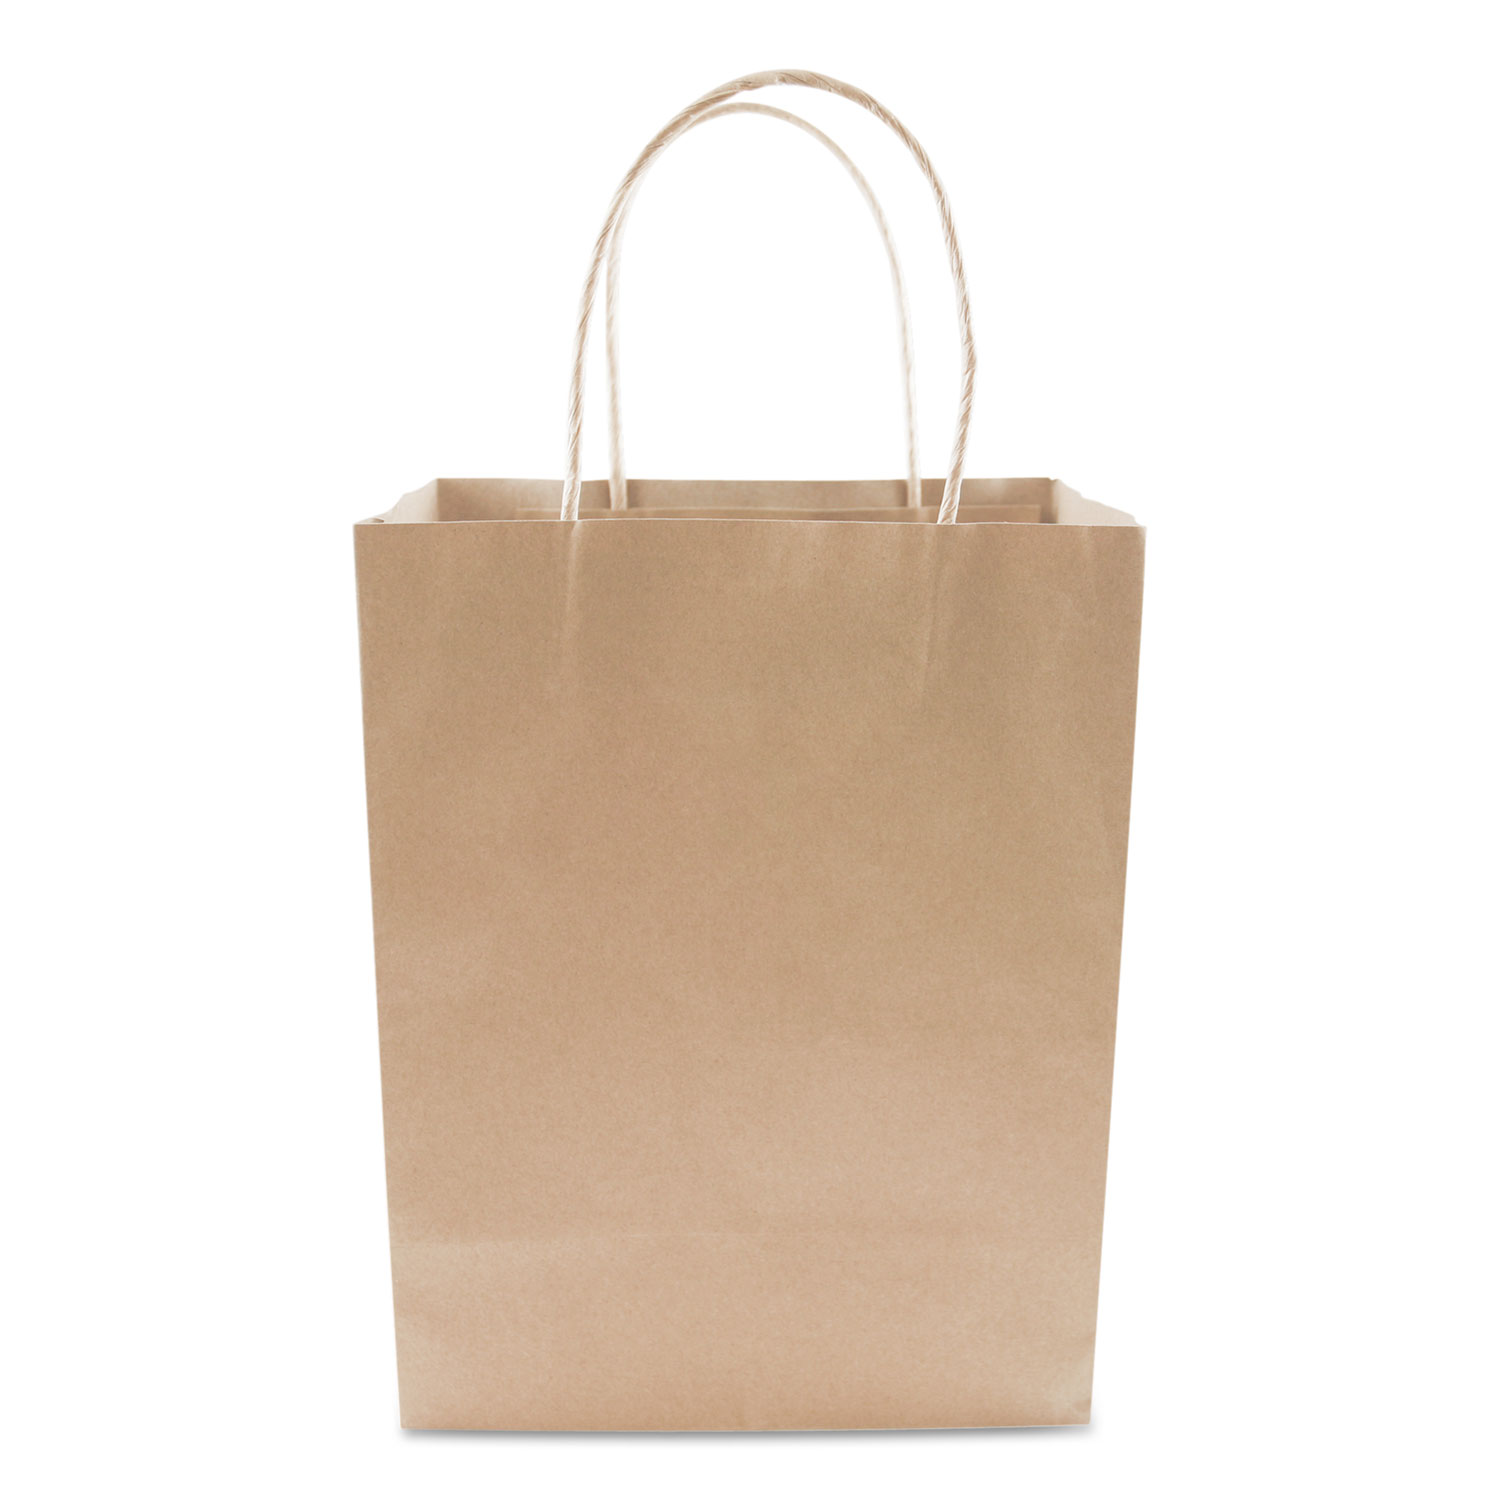 Premium Shopping Bag, 8